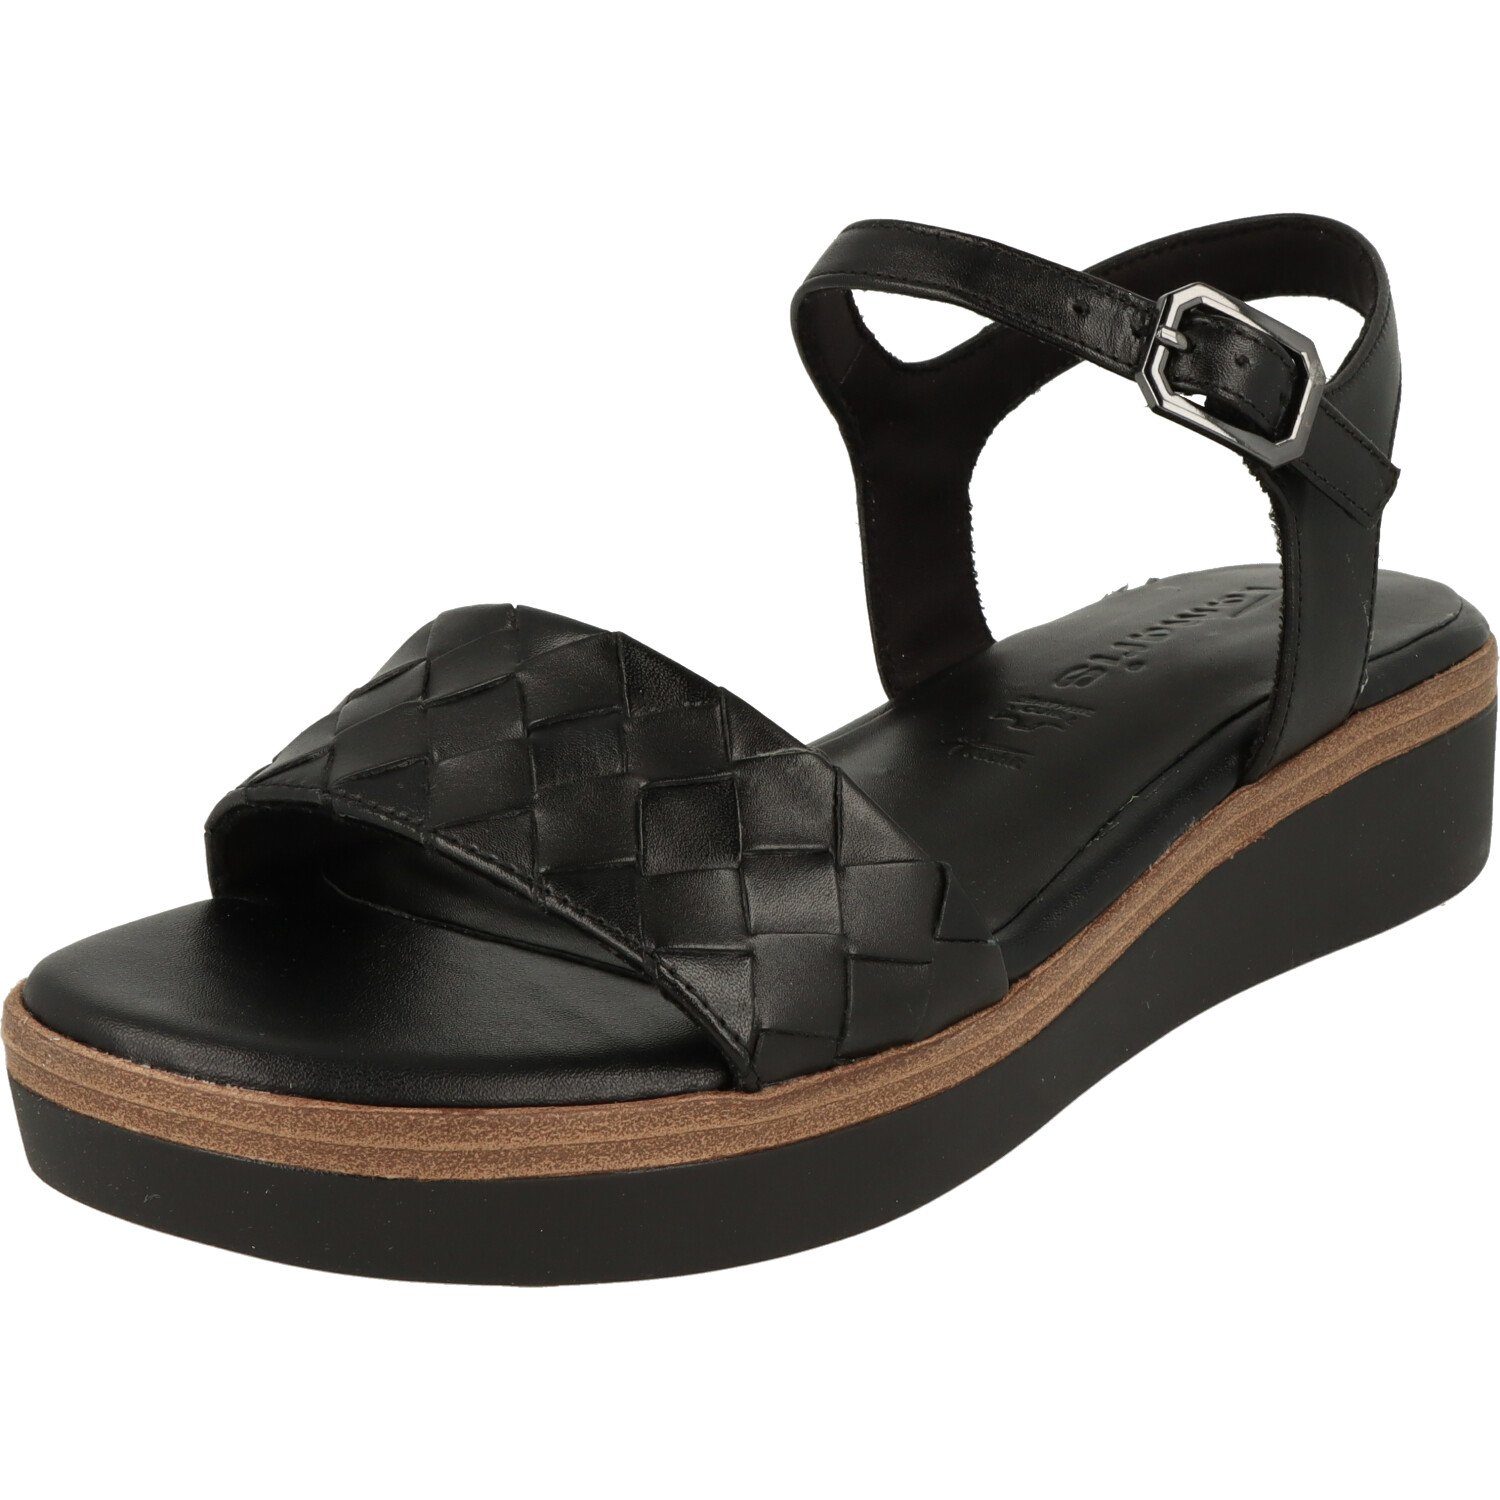 Schuhe Damen Leder Black Tamaris 1-28216-20 Sandalette Sandalette Komfort Riemchen